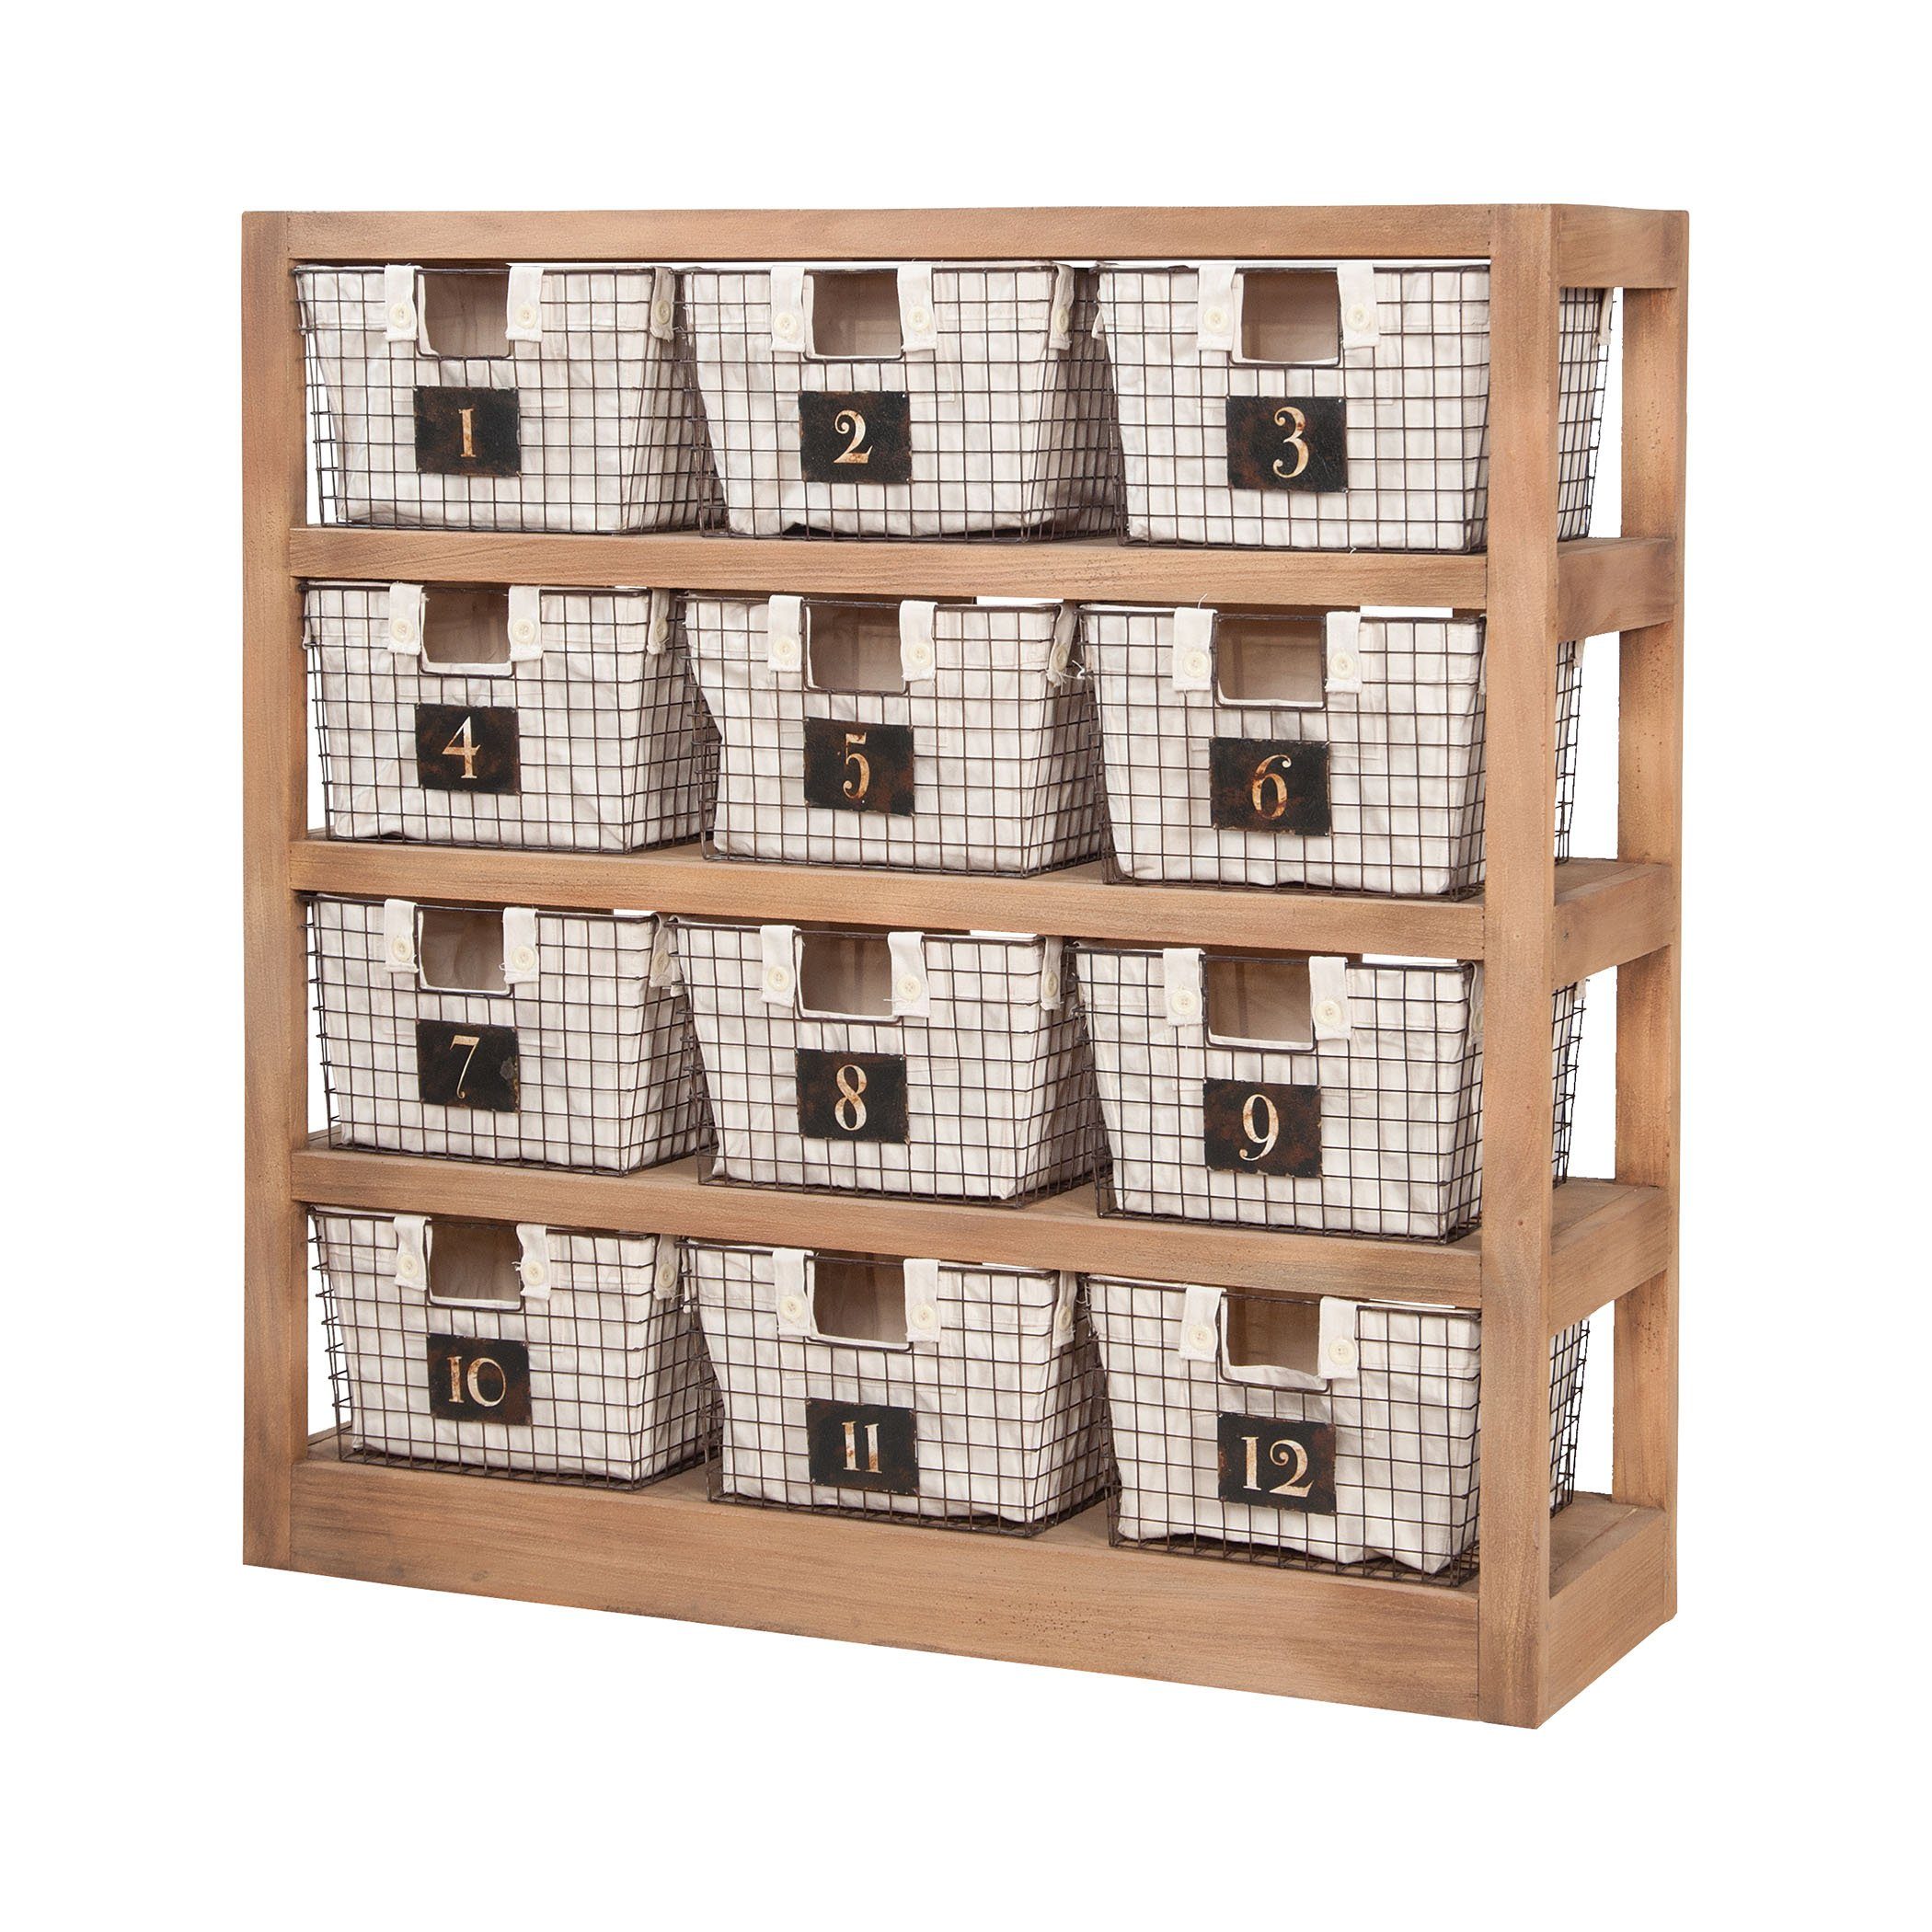 Locker Baskets With Shelves Furniture GuildMaster 